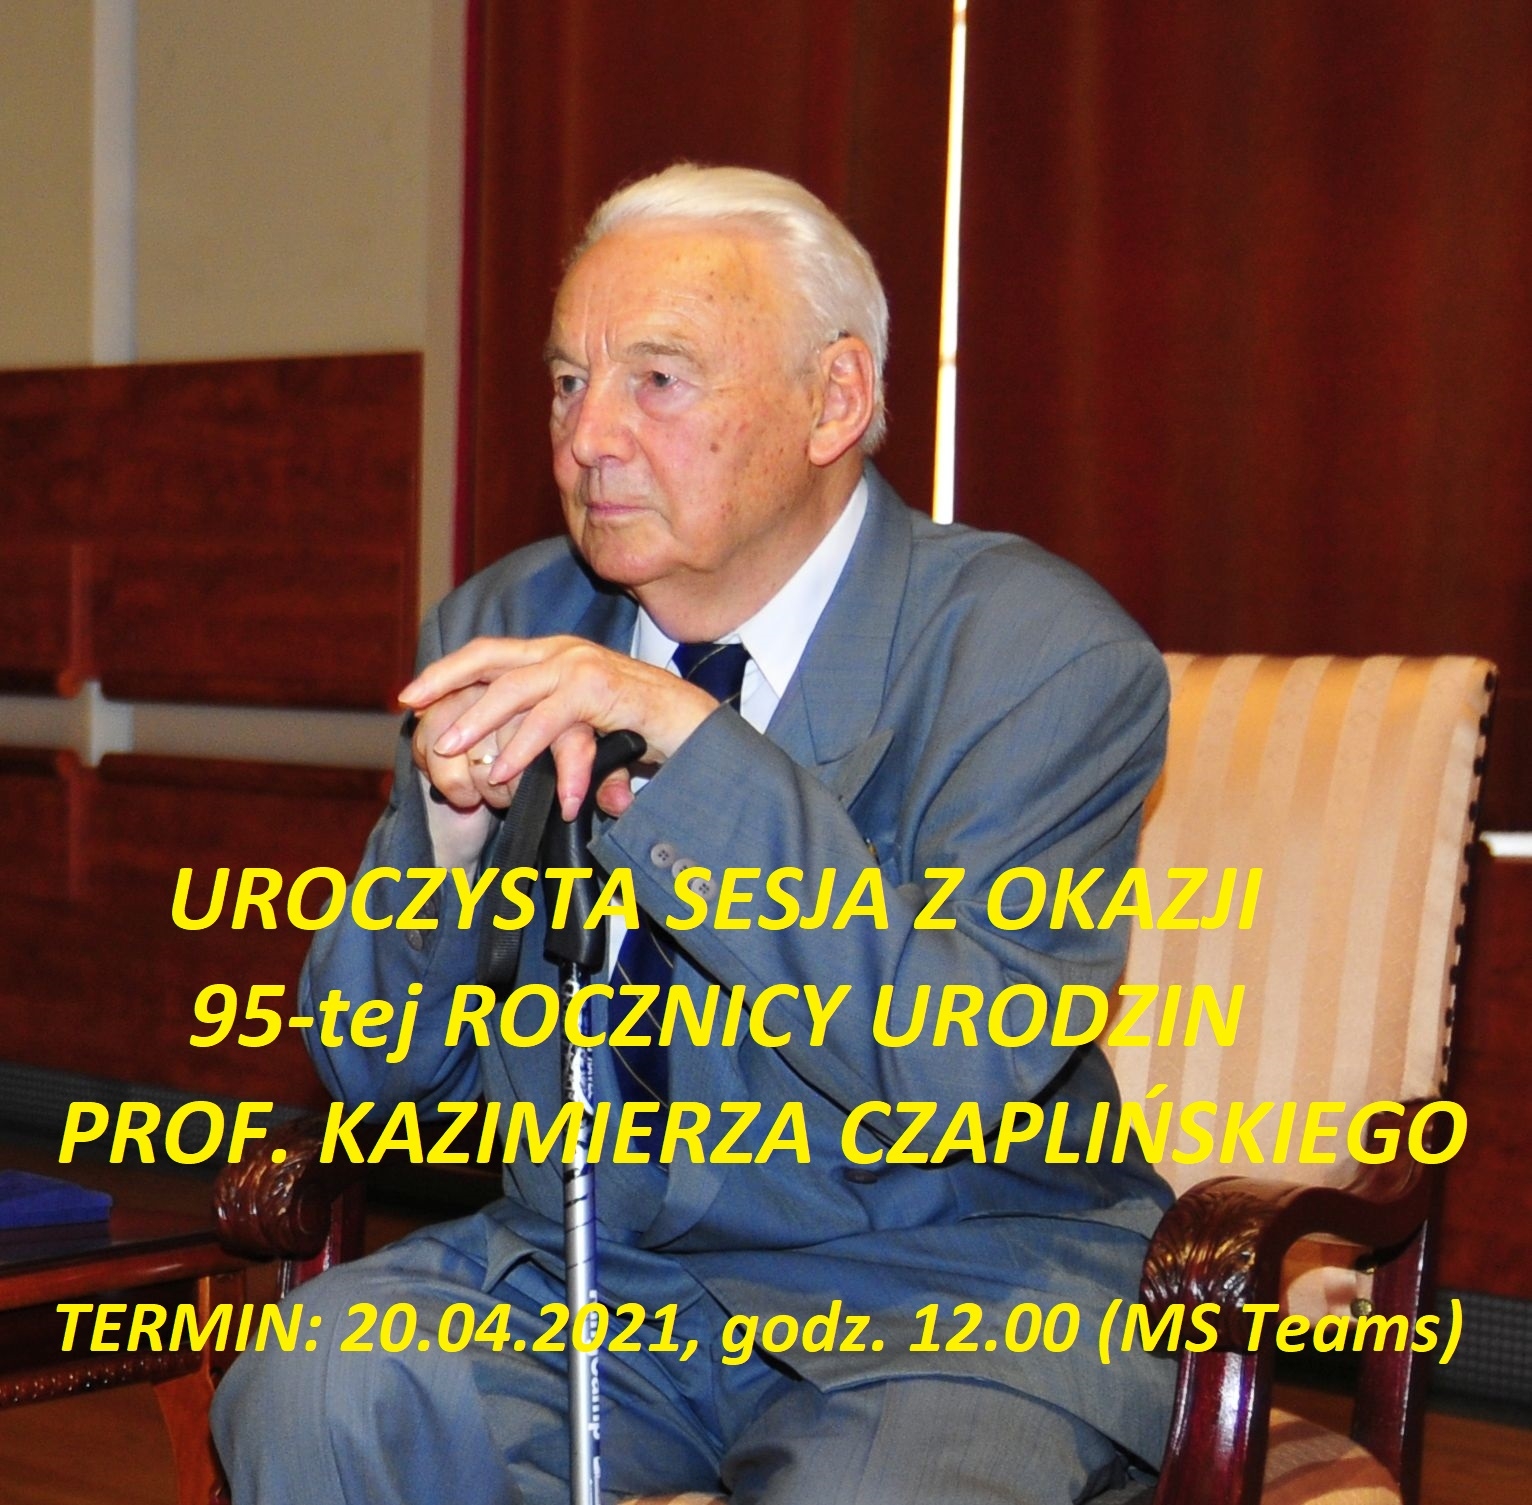 Prof. Kazimierz Czapliński